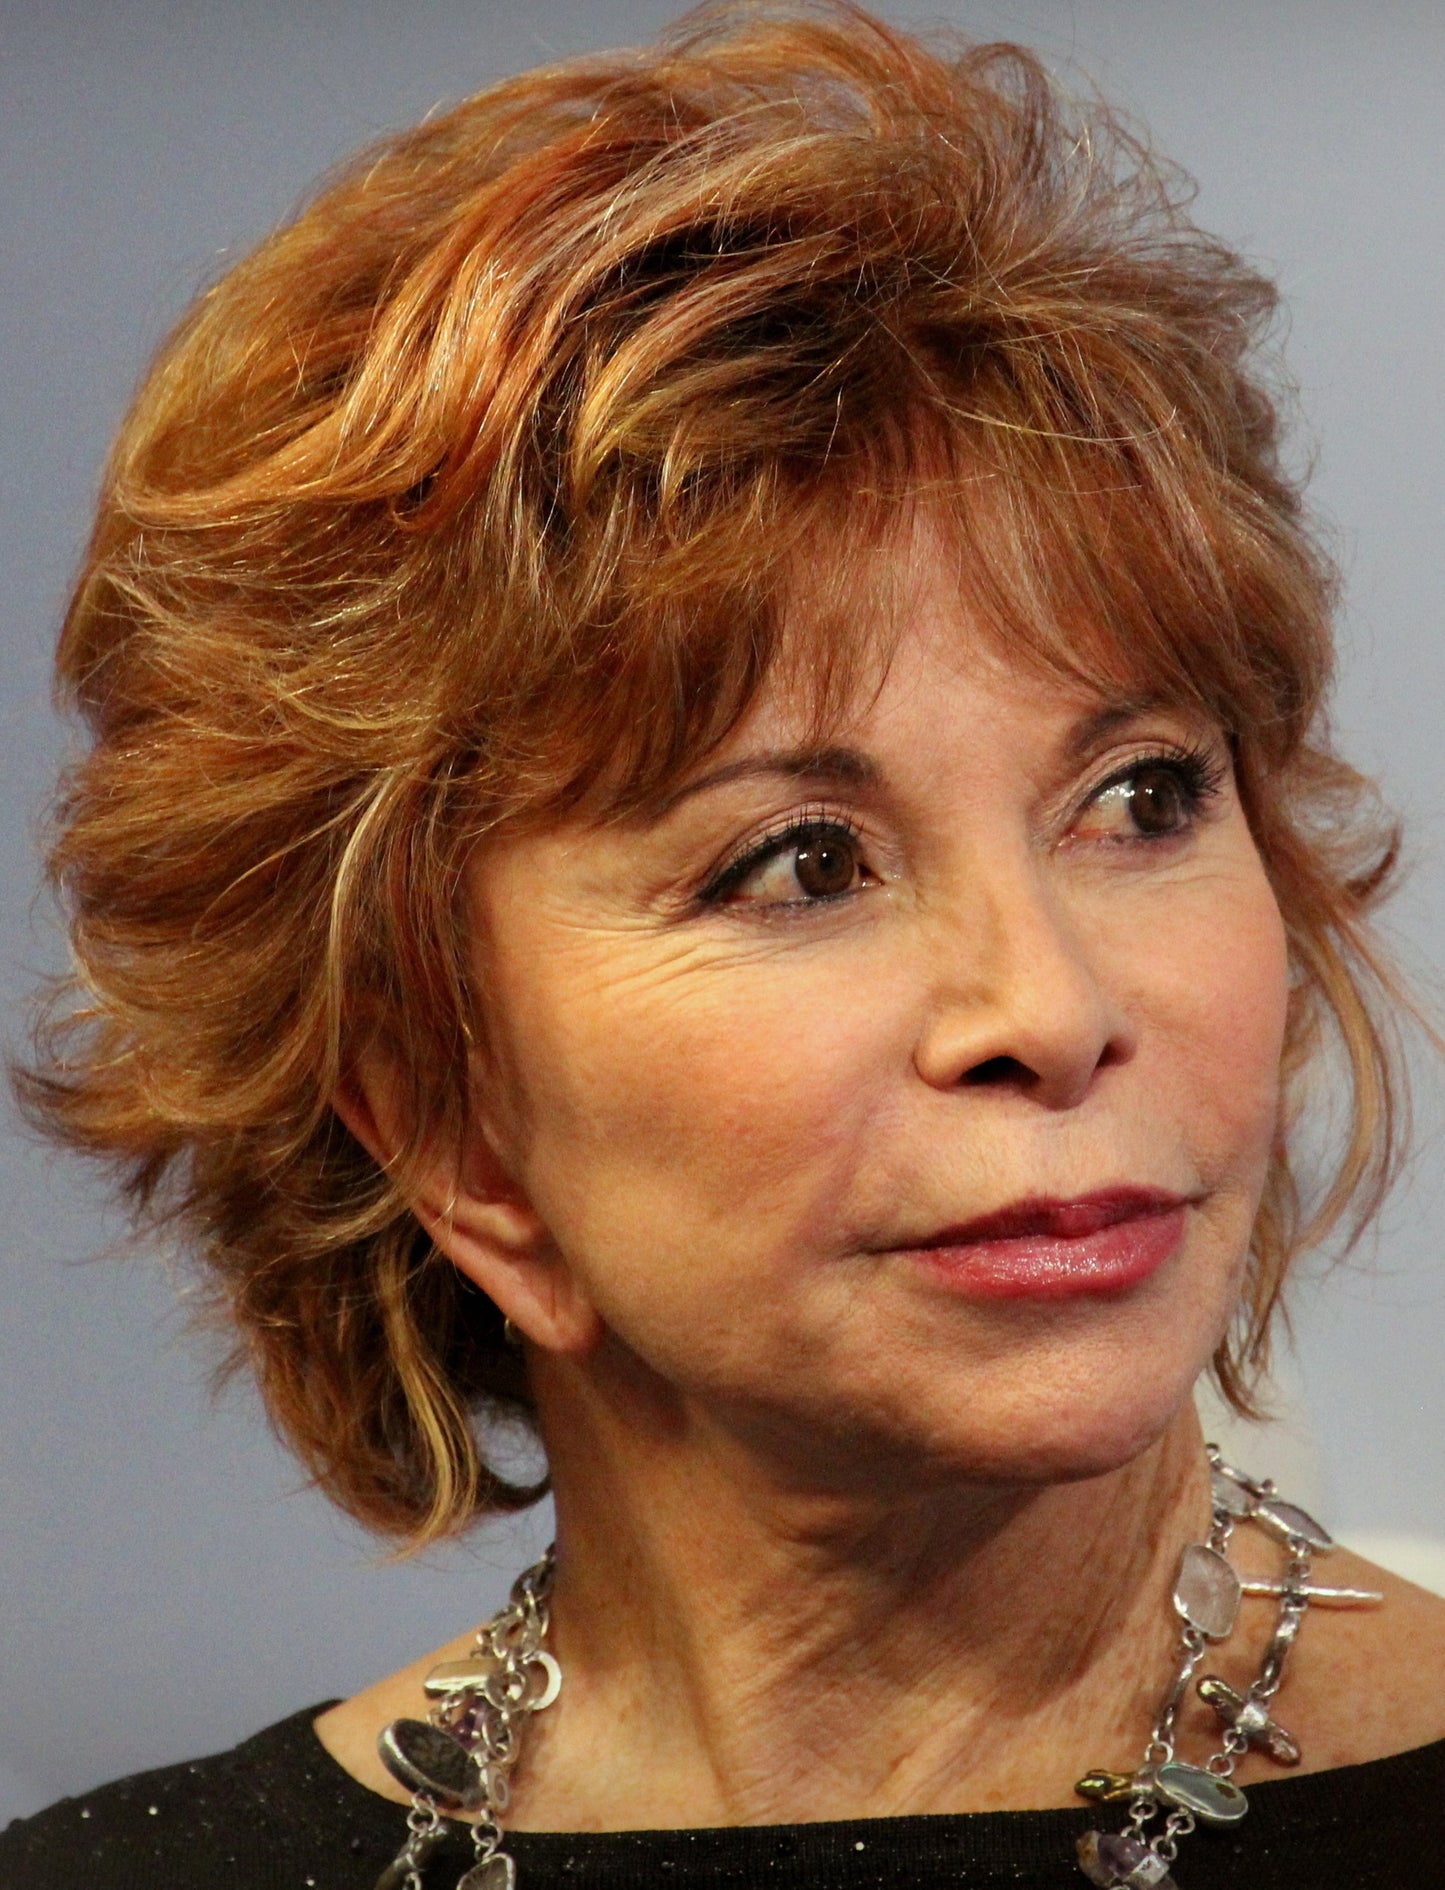 Isabel Allende Chatbot - Socialdraft